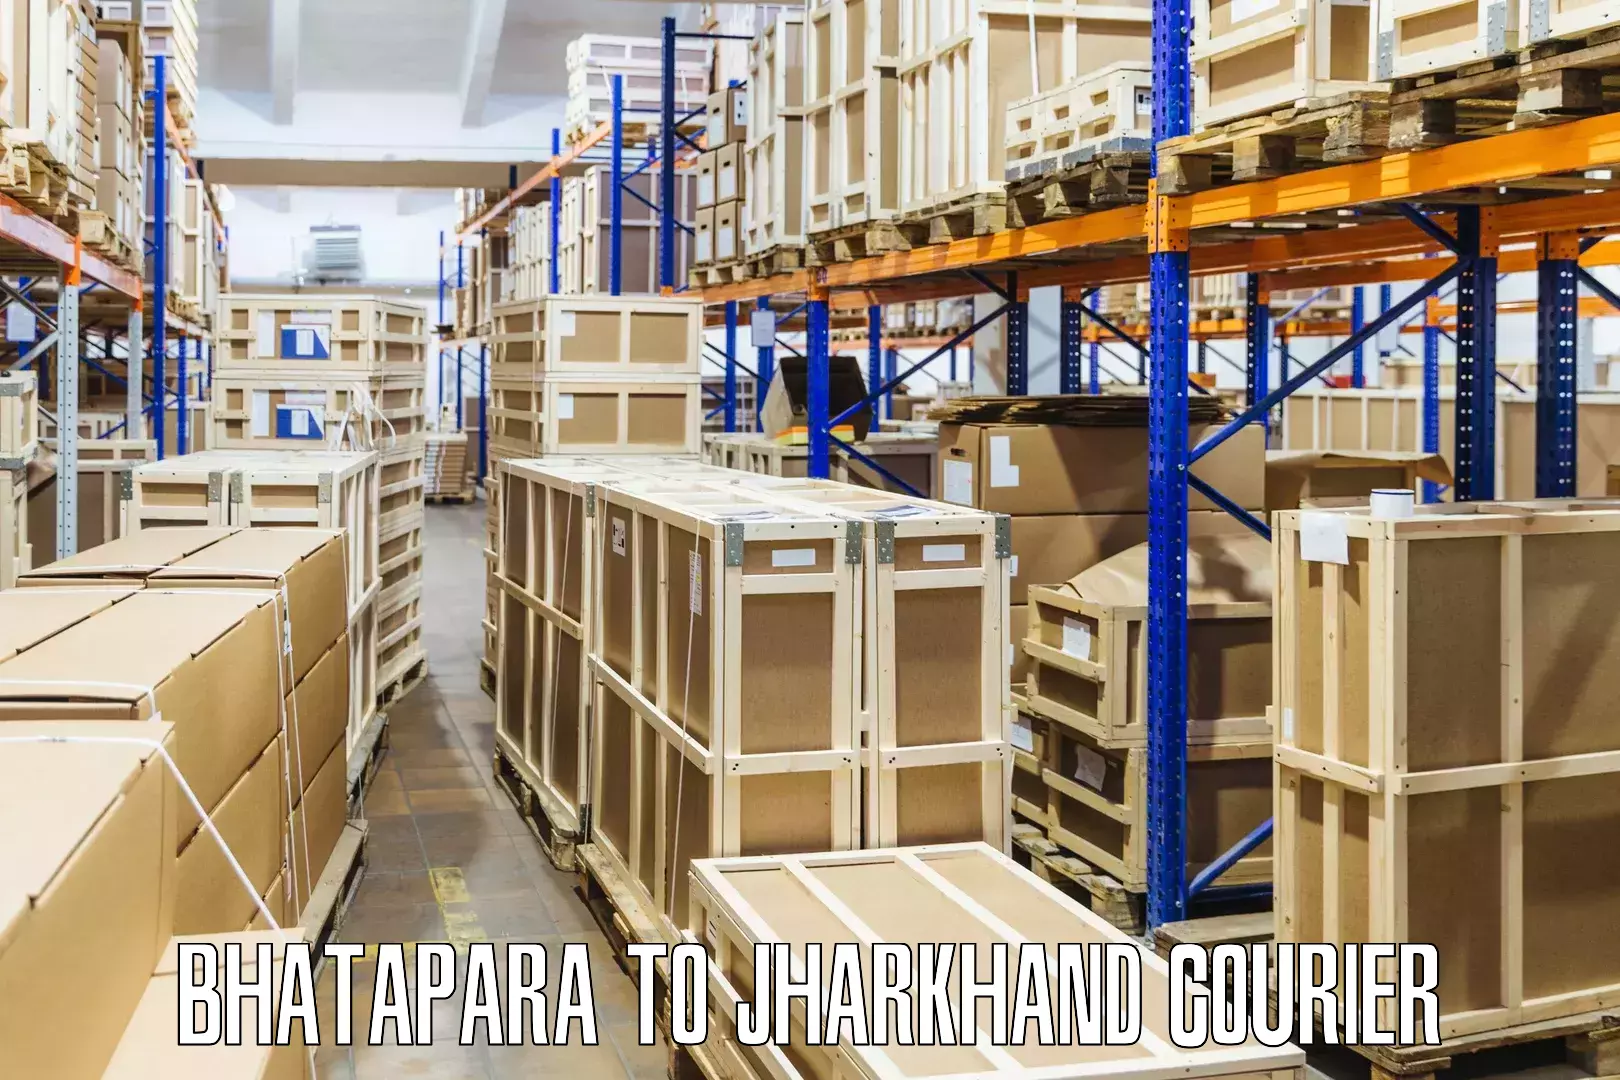 Smart logistics solutions Bhatapara to Gomoh